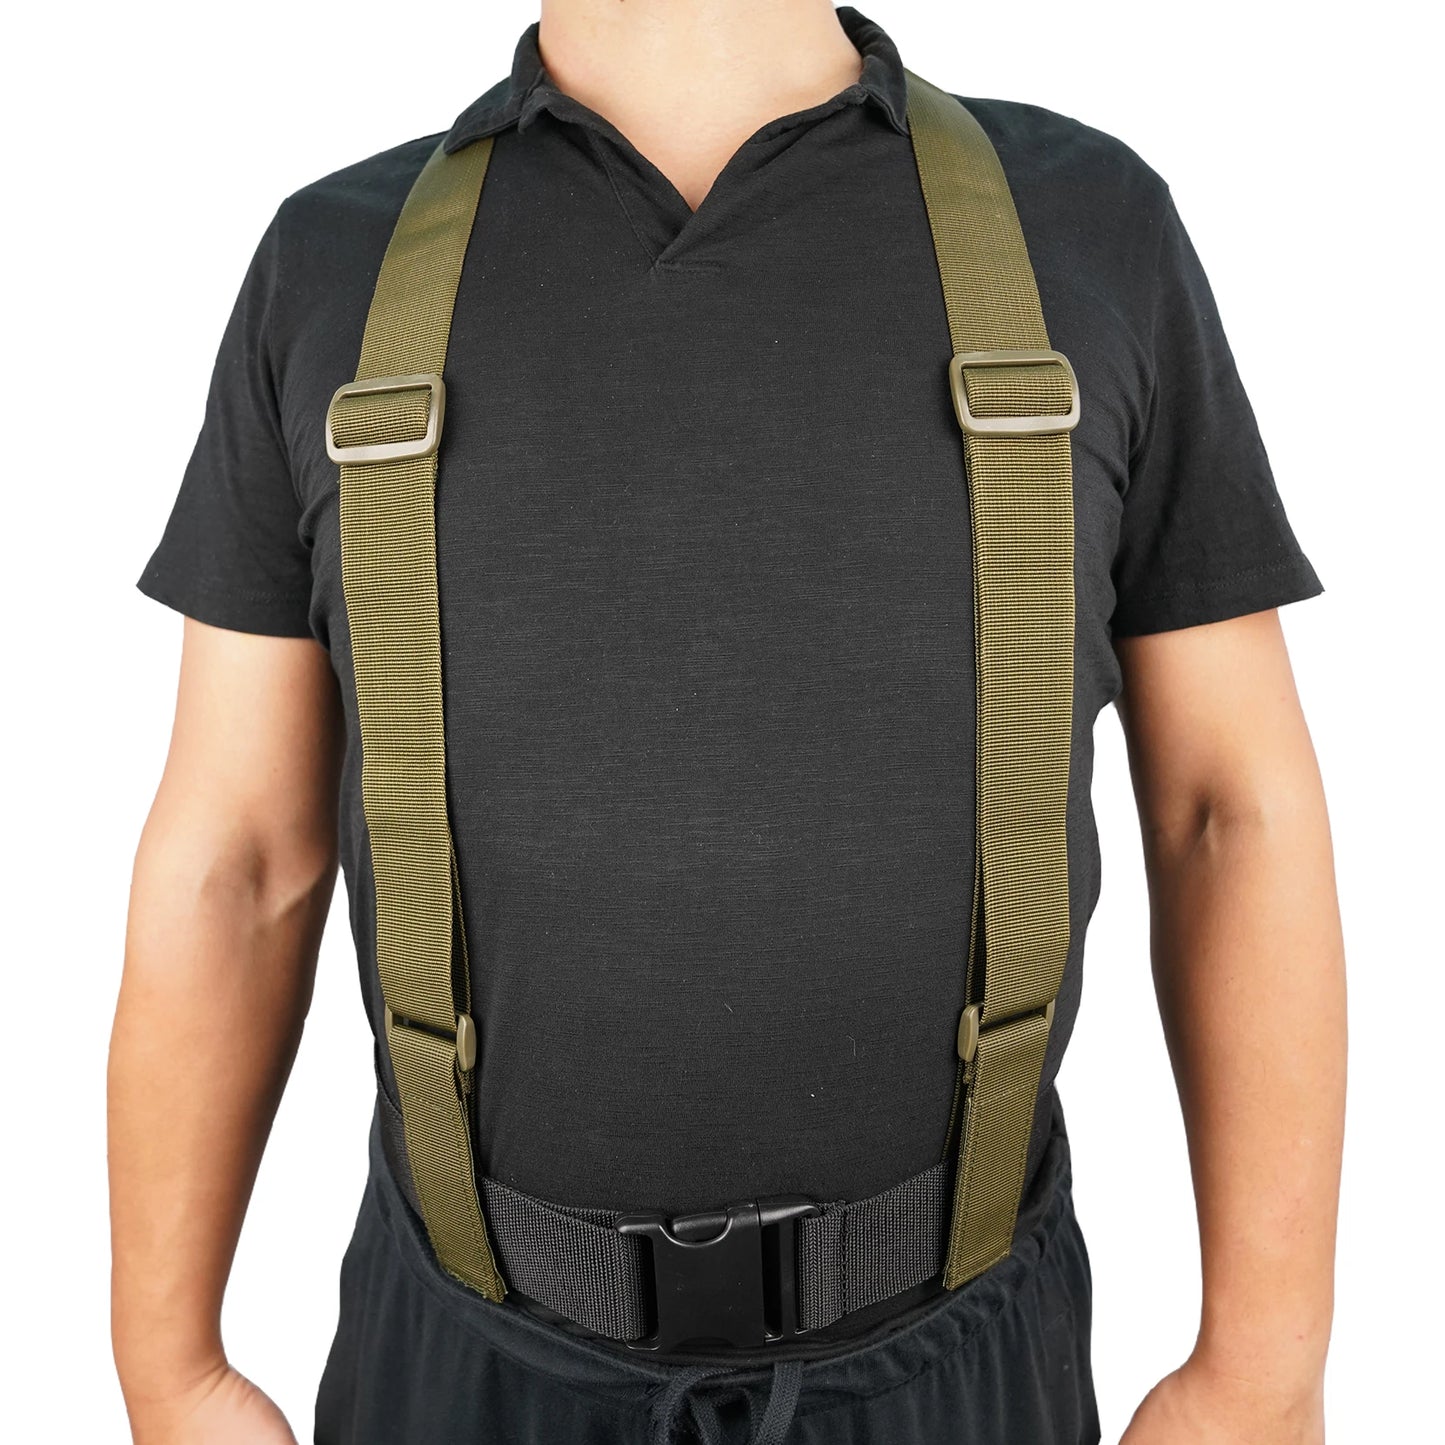 Outdoor combat braces Mens Suspenders